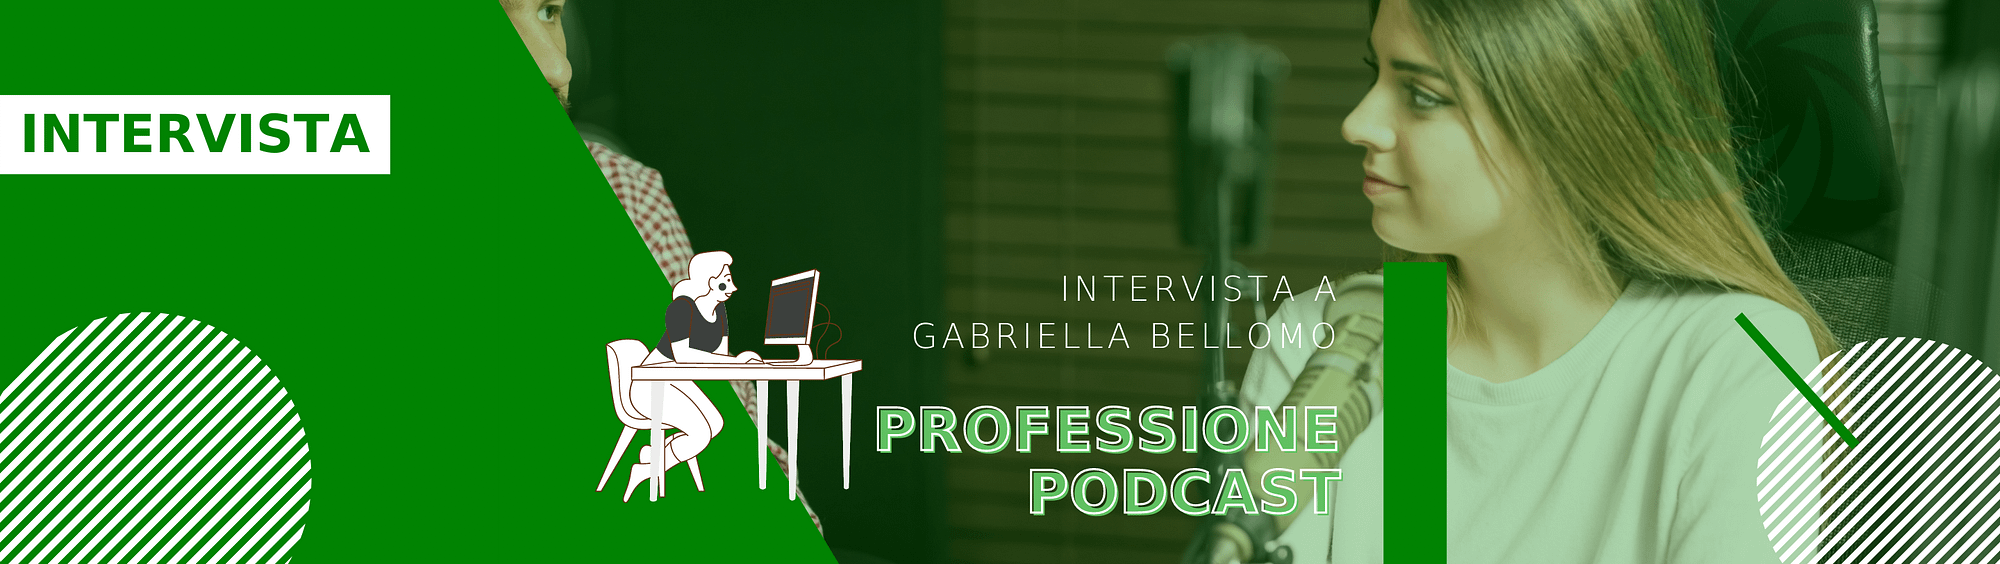 intervista-podcaster-gabriella-bellomo